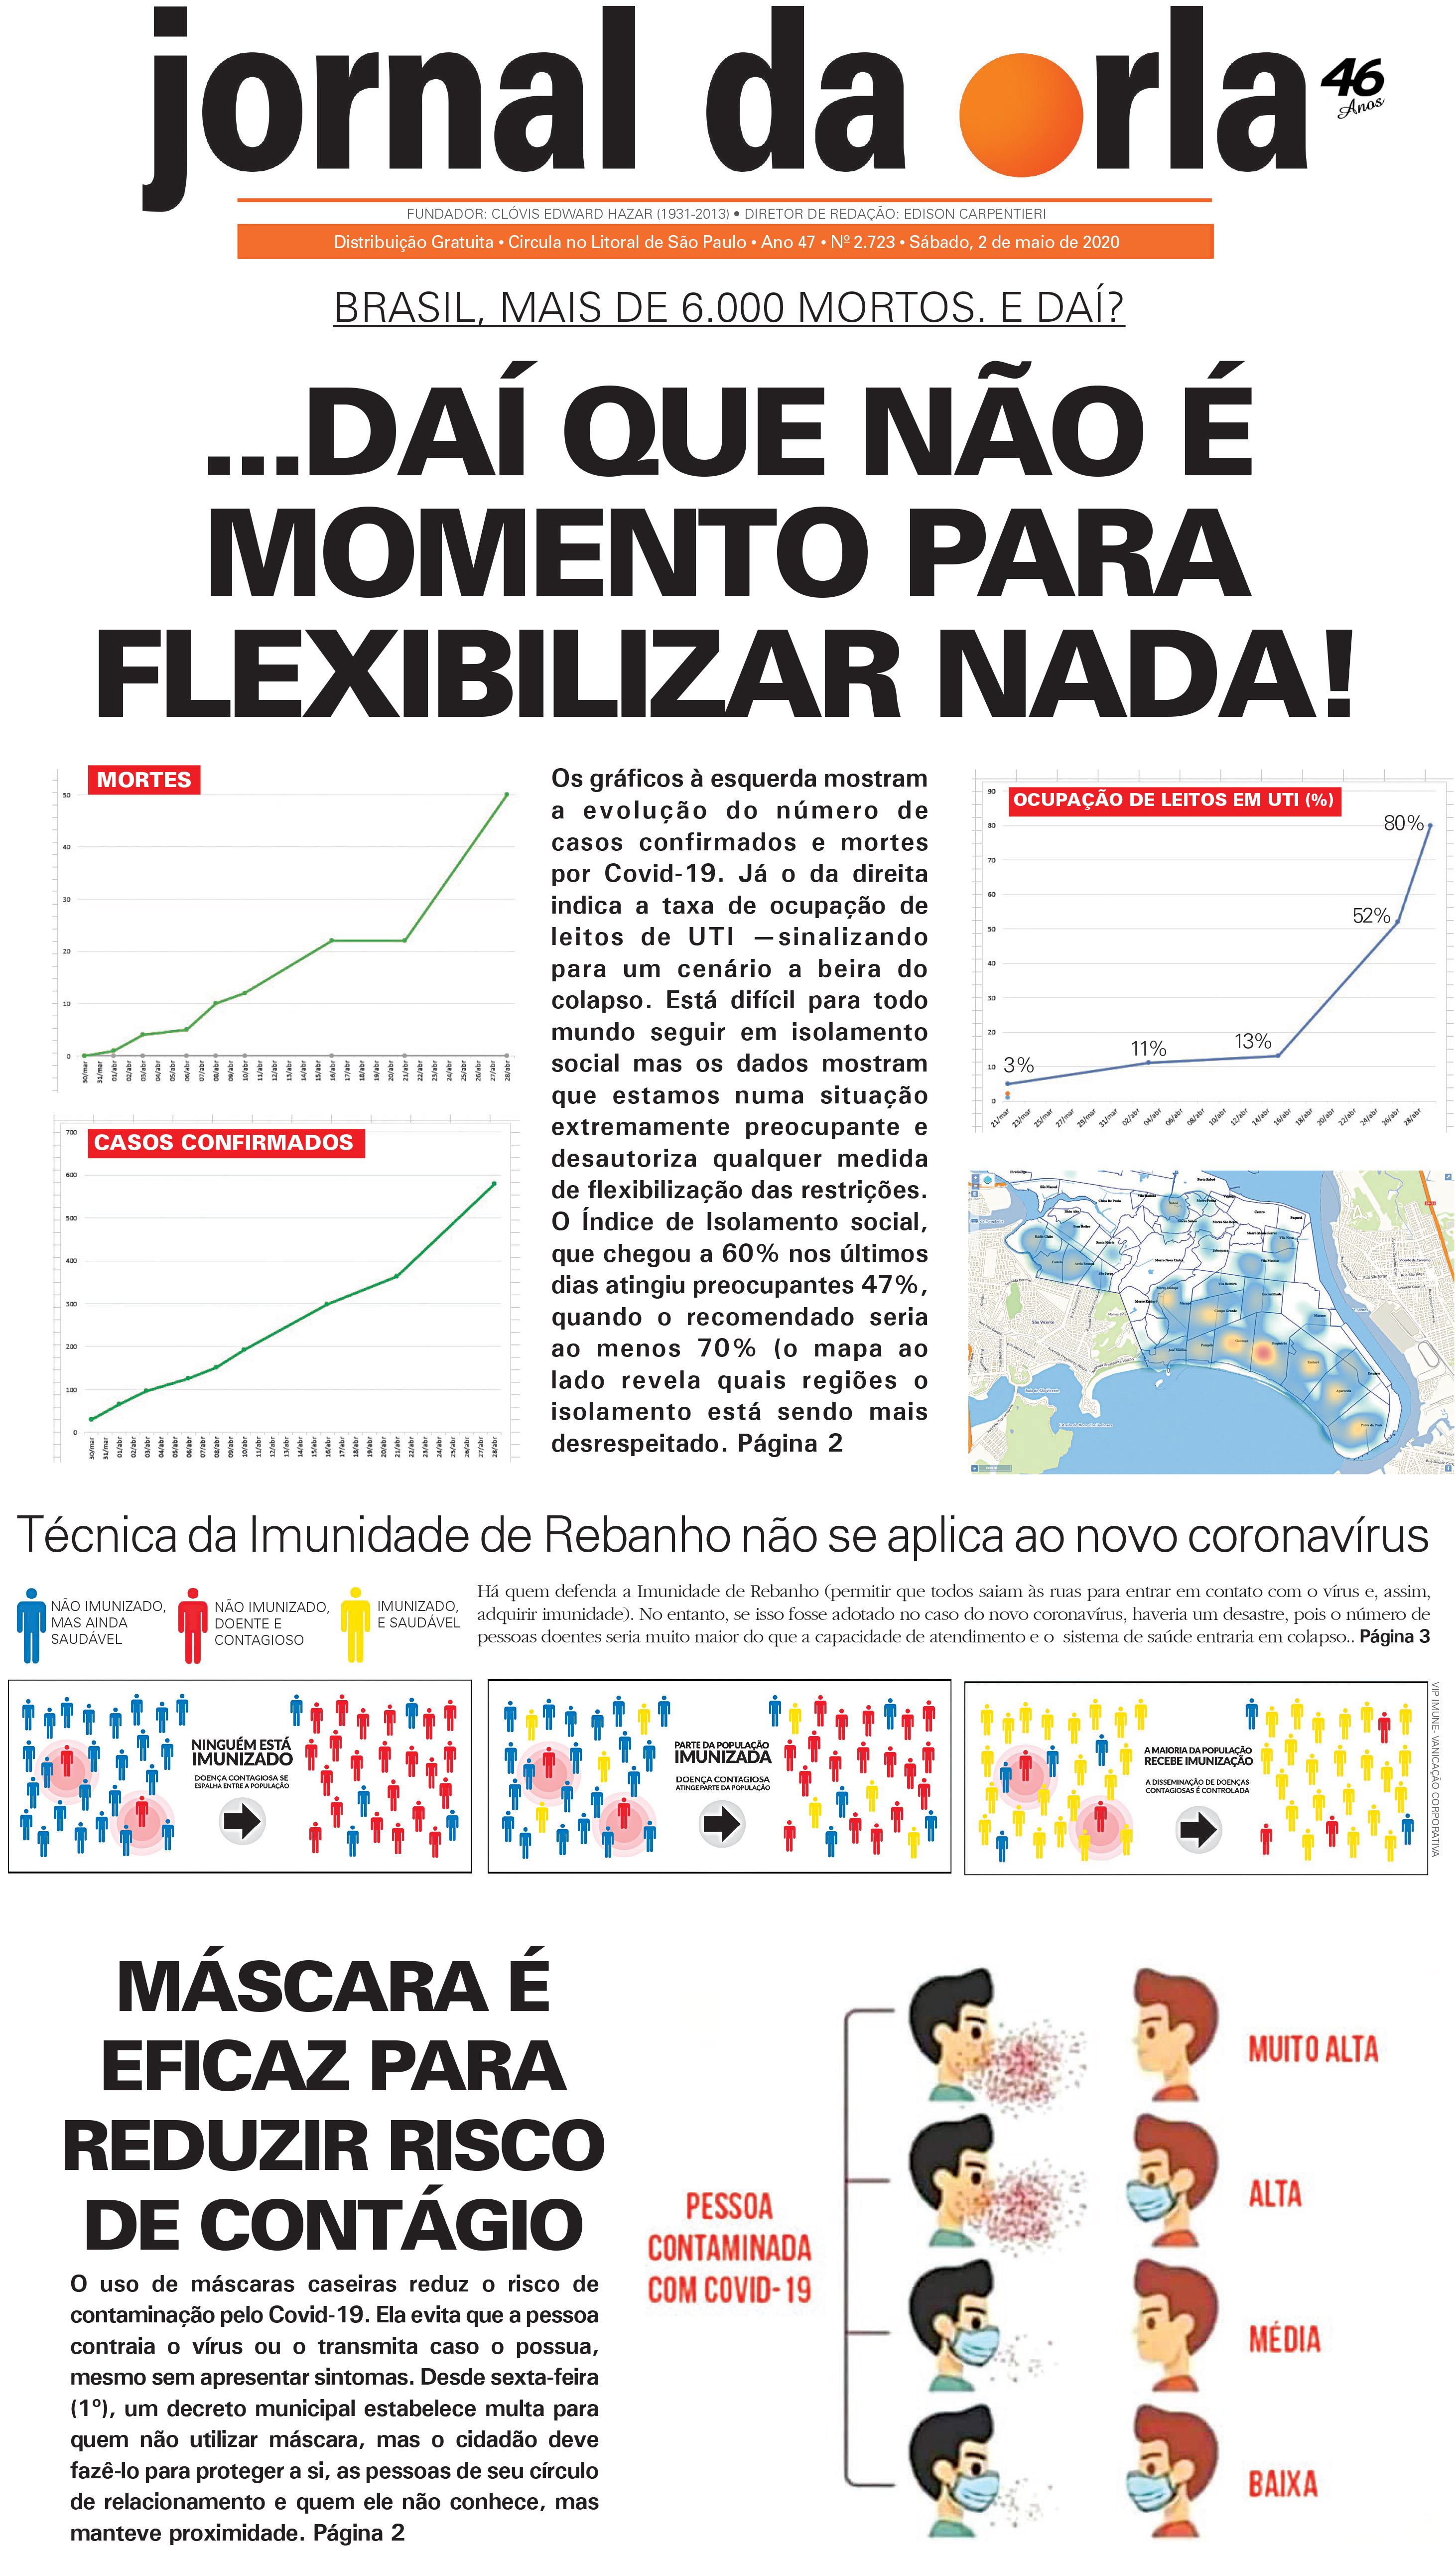 02/05/2020 | Jornal da Orla